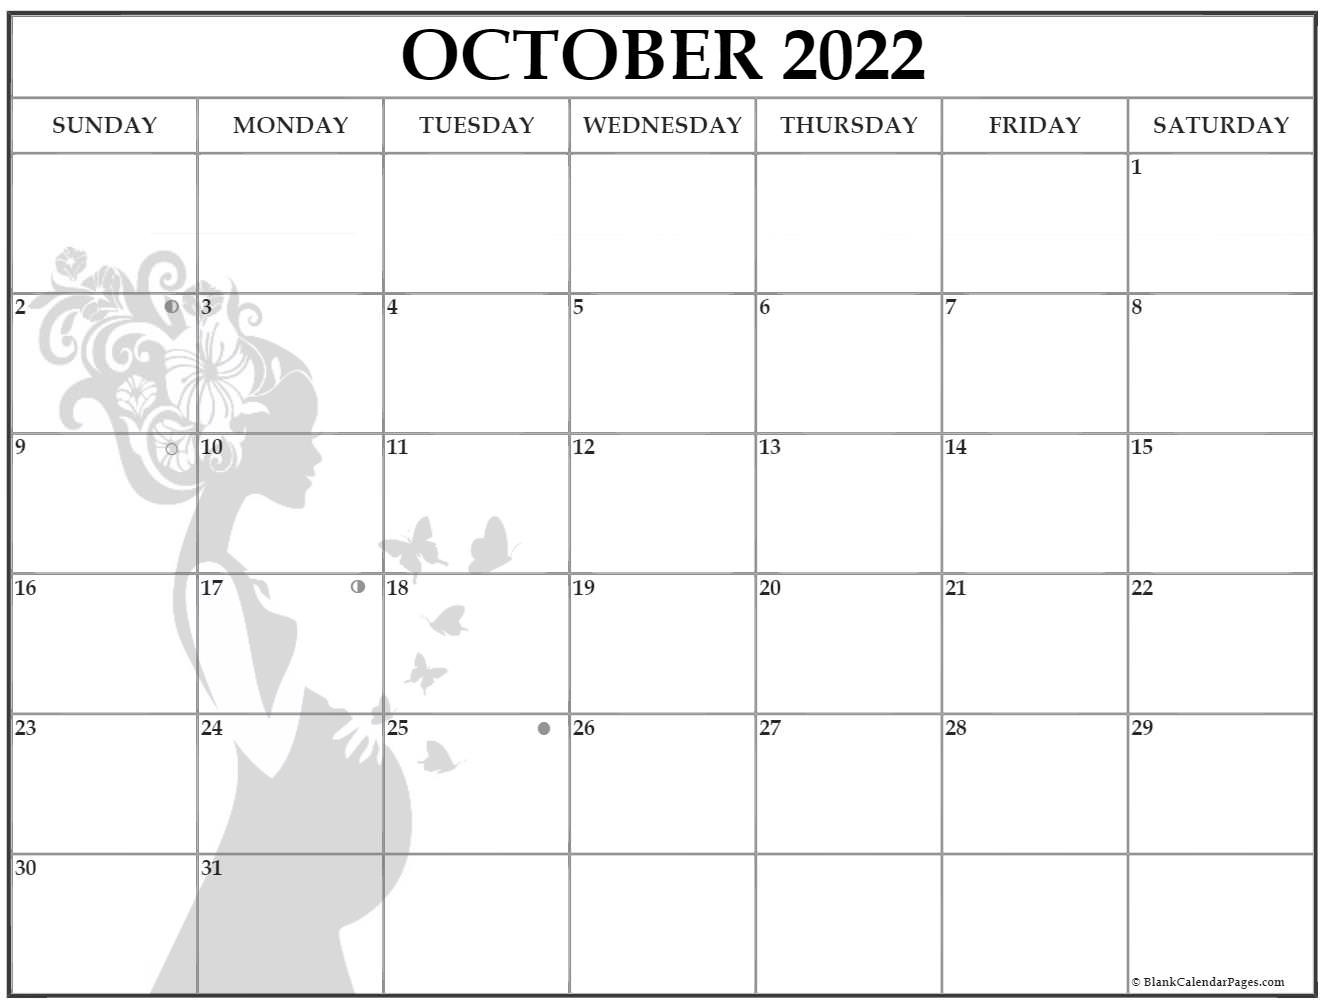 October 2022 Pregnancy Calendar | Fertility Calendar with regard to Free Lunar Calendar 2022 Printable